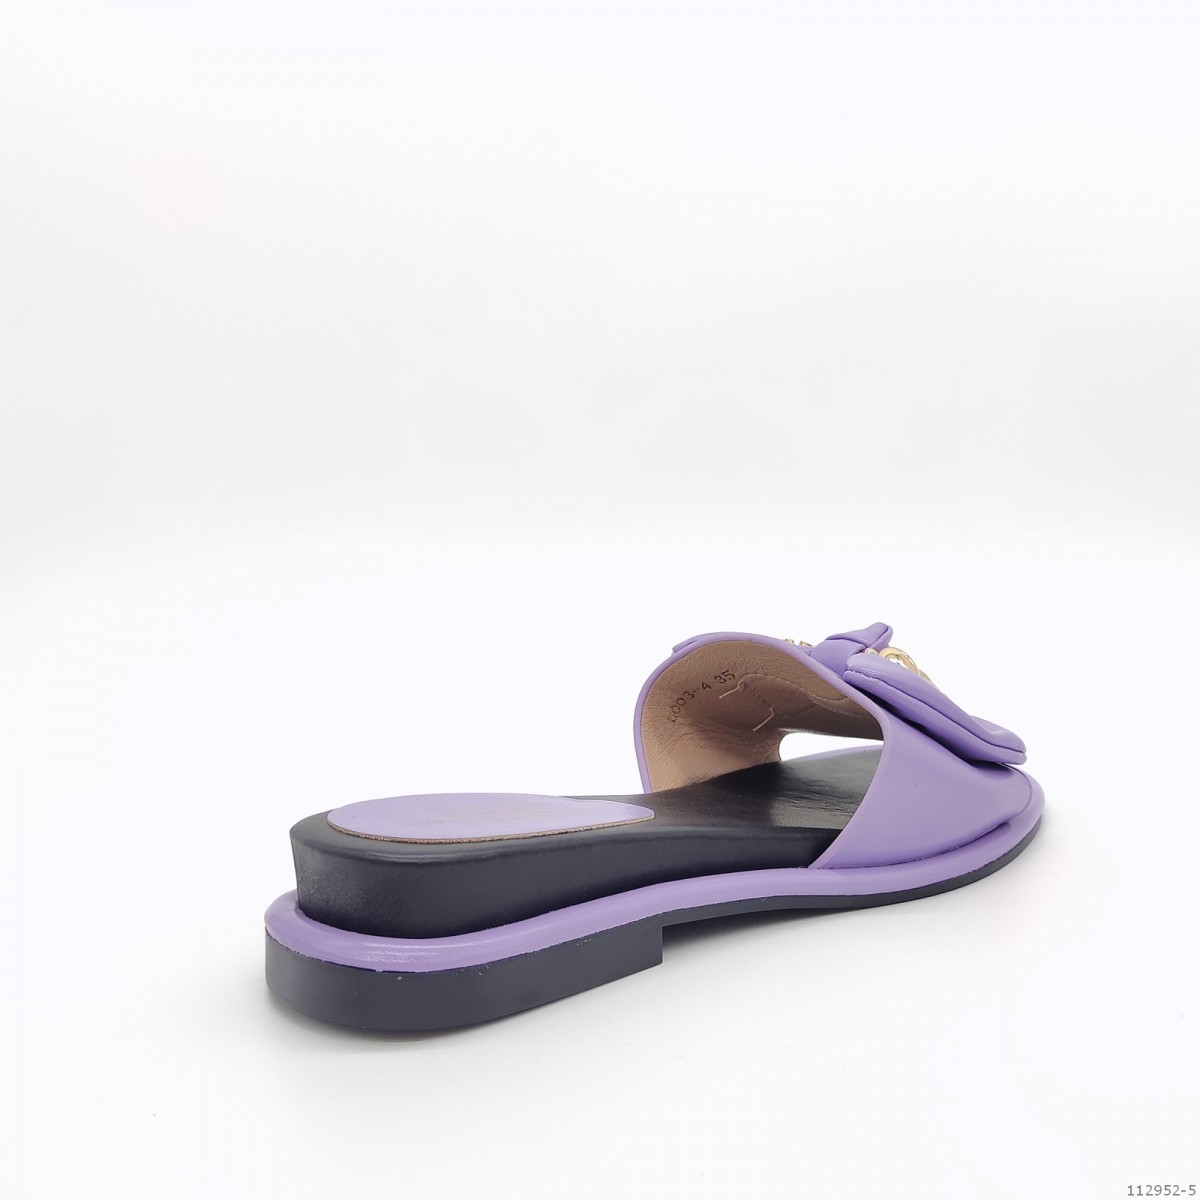 шлепки Camile женские летние, фиолетовый, экокожа,112 952